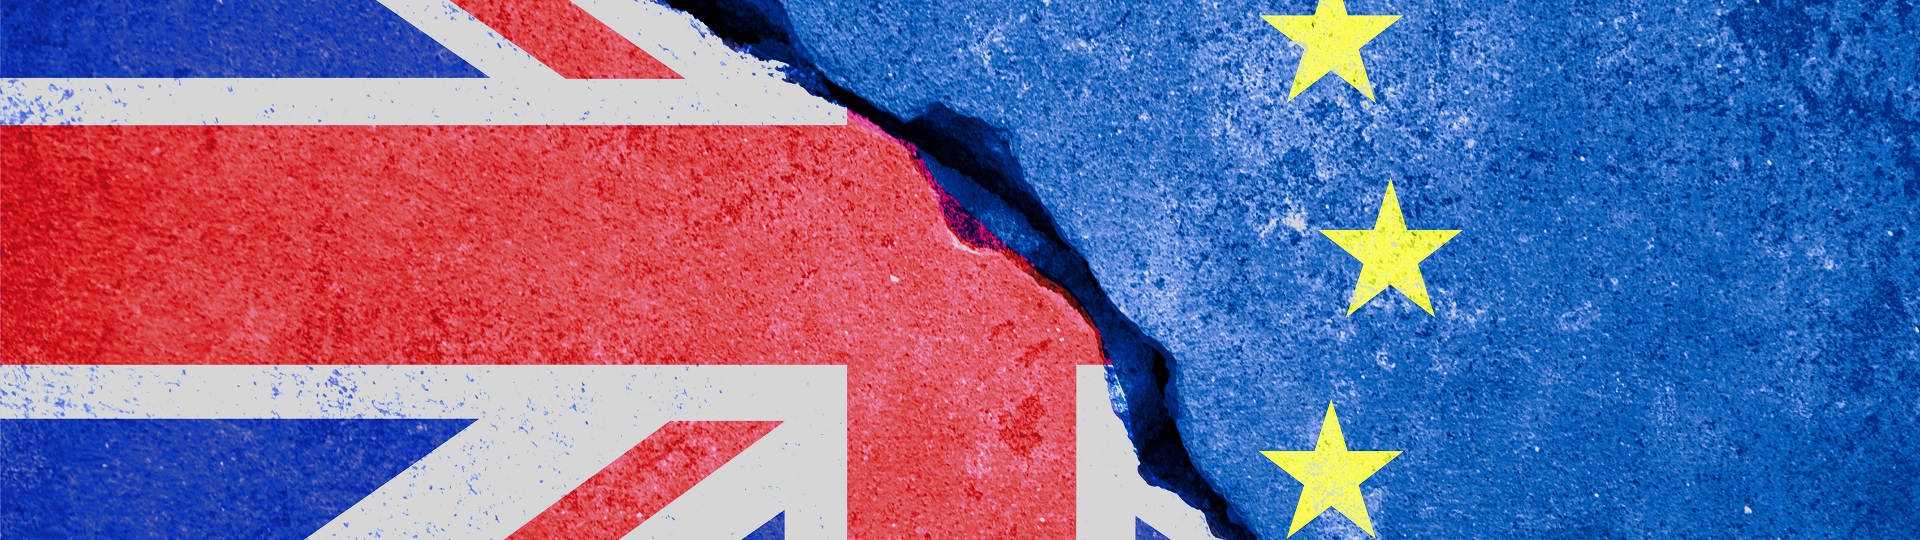 Dohoda o brexitu má podporu EU. Schválí ji Britové?